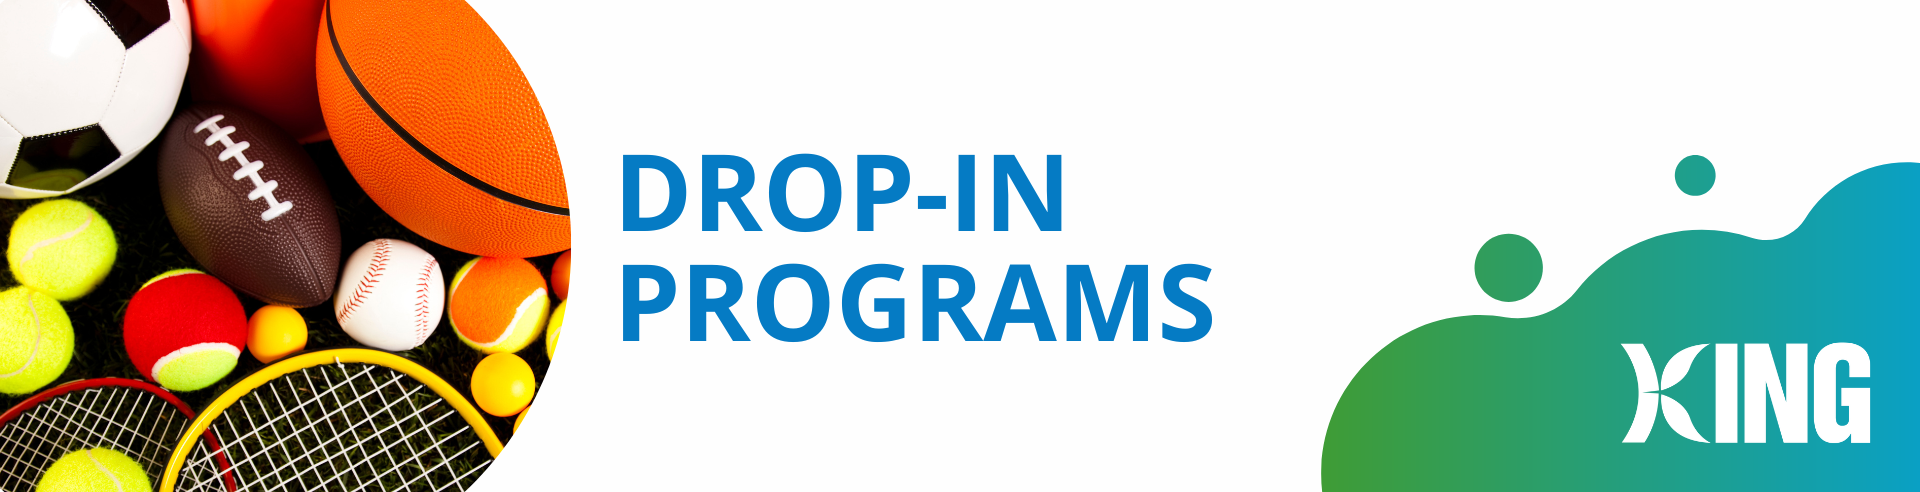 drop in programs banner